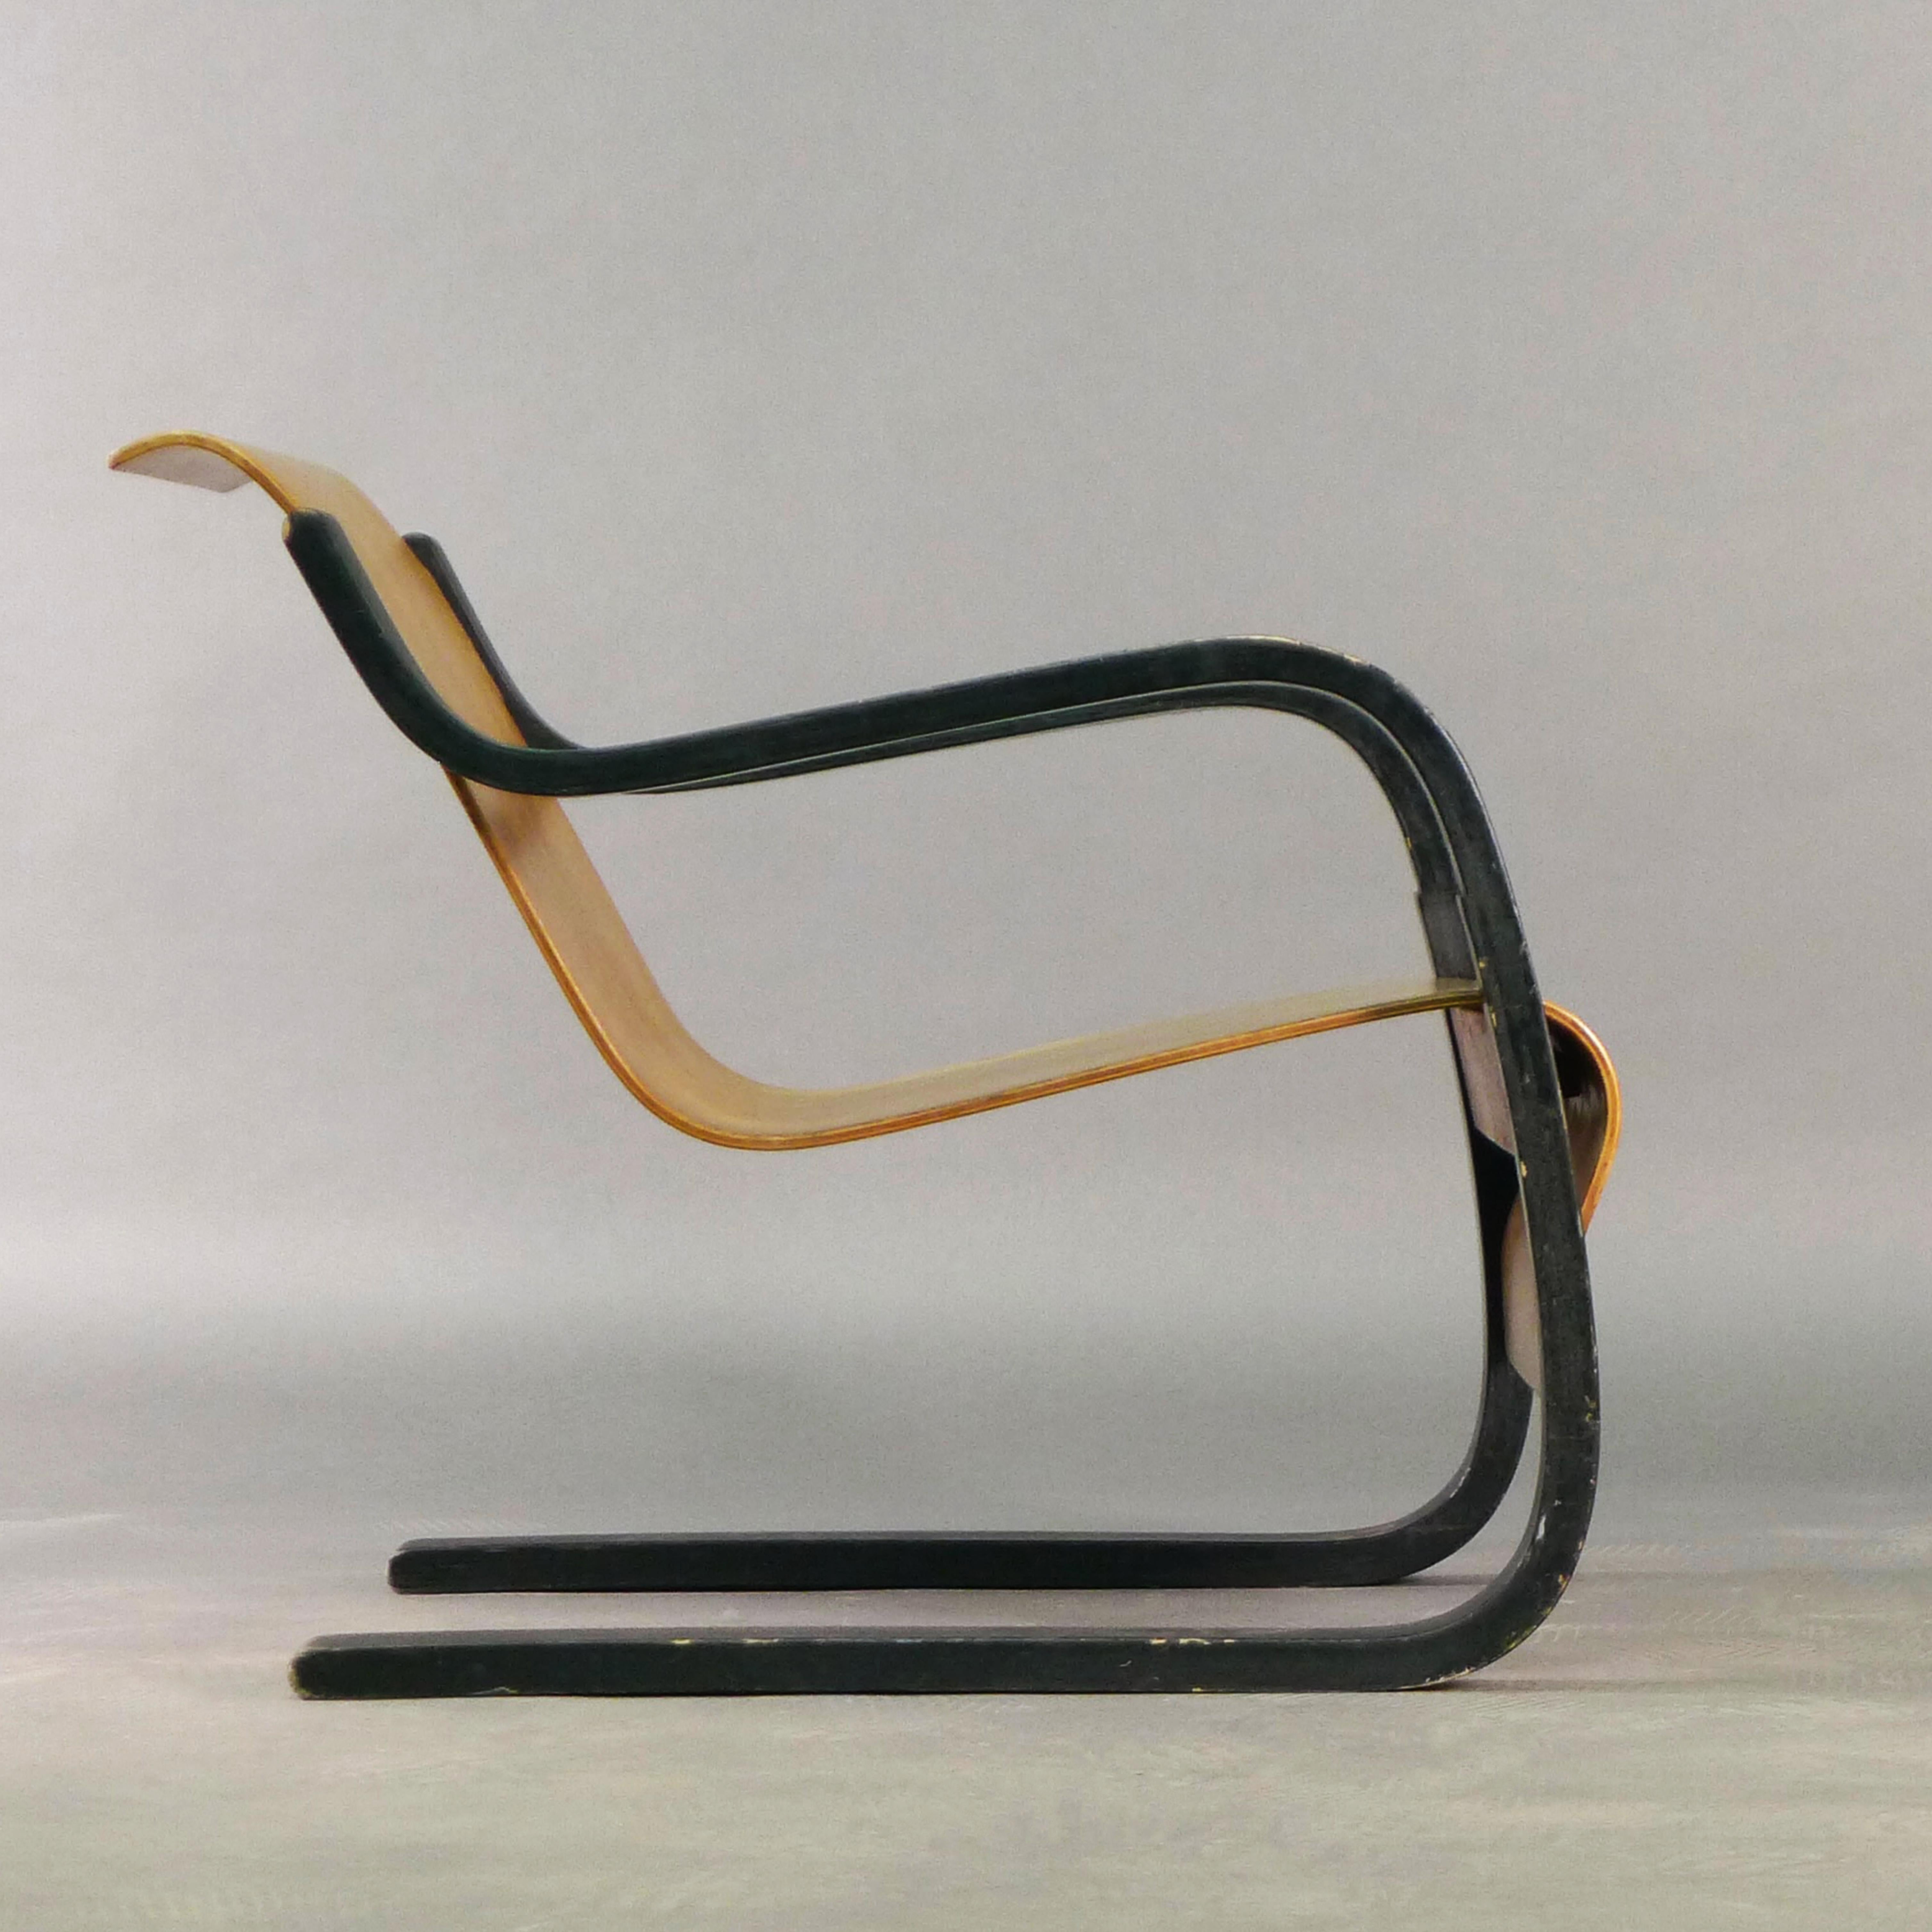 Alvar Aalto Stuhl Modell 31 aus formgepresstem Birkensperrholz, Sitz und Rückenlehne freitragend aus einem Stück an gebogenen, schwarz lackierten Stützen aufgehängt.

Entworfen in den 1930er Jahren und hergestellt von Huonekalu-ja Rakennustyötehdas